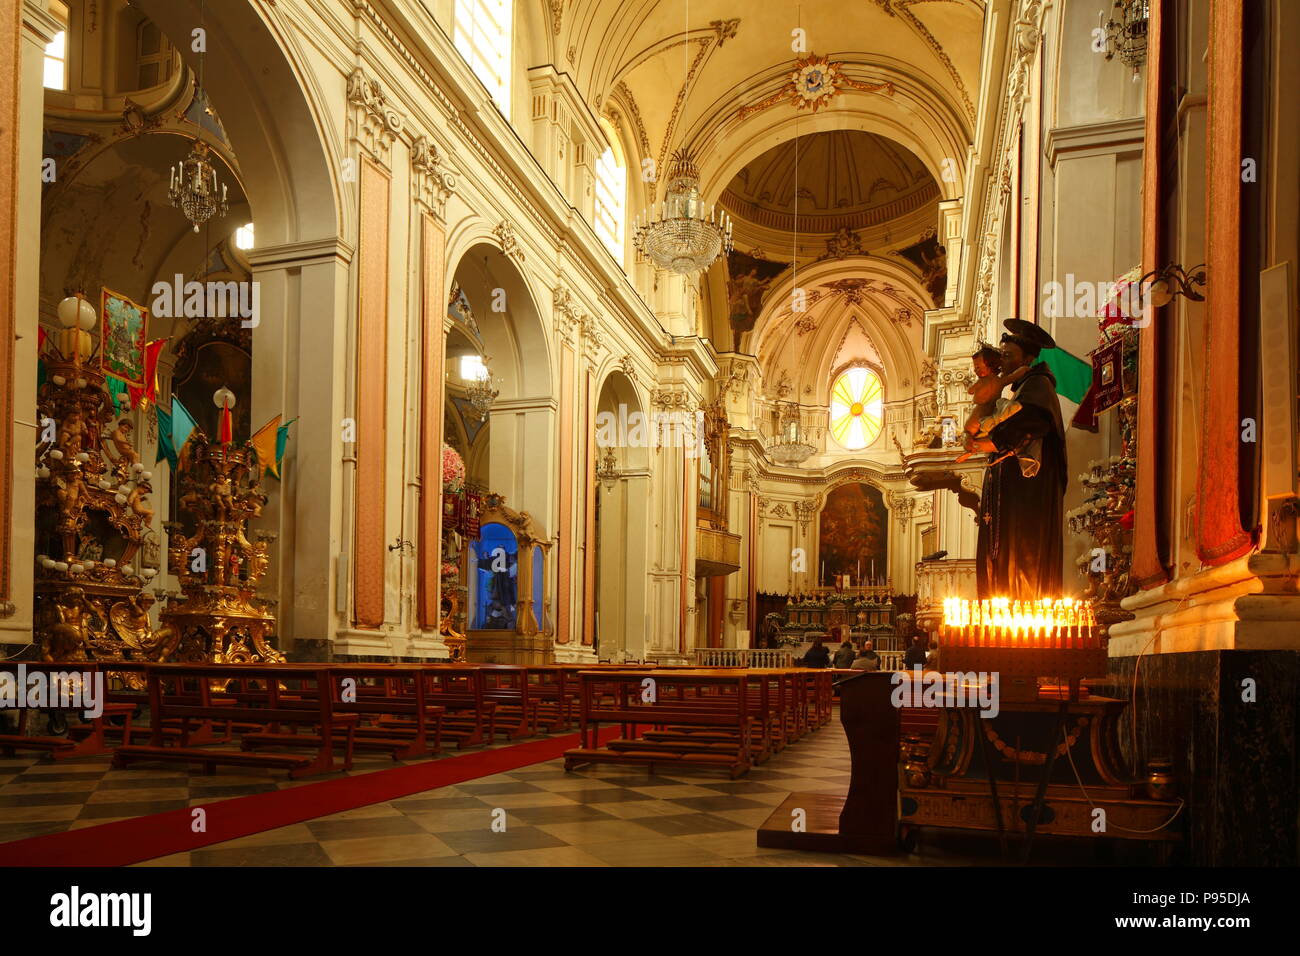 L'intérieur, la cathédrale Sant'Agata, Catane, Sicile, Italie, Europe je Innenraum, Dom Kathedrale Sant'Agata, Catania, sicilia, Italie, Europa Banque D'Images